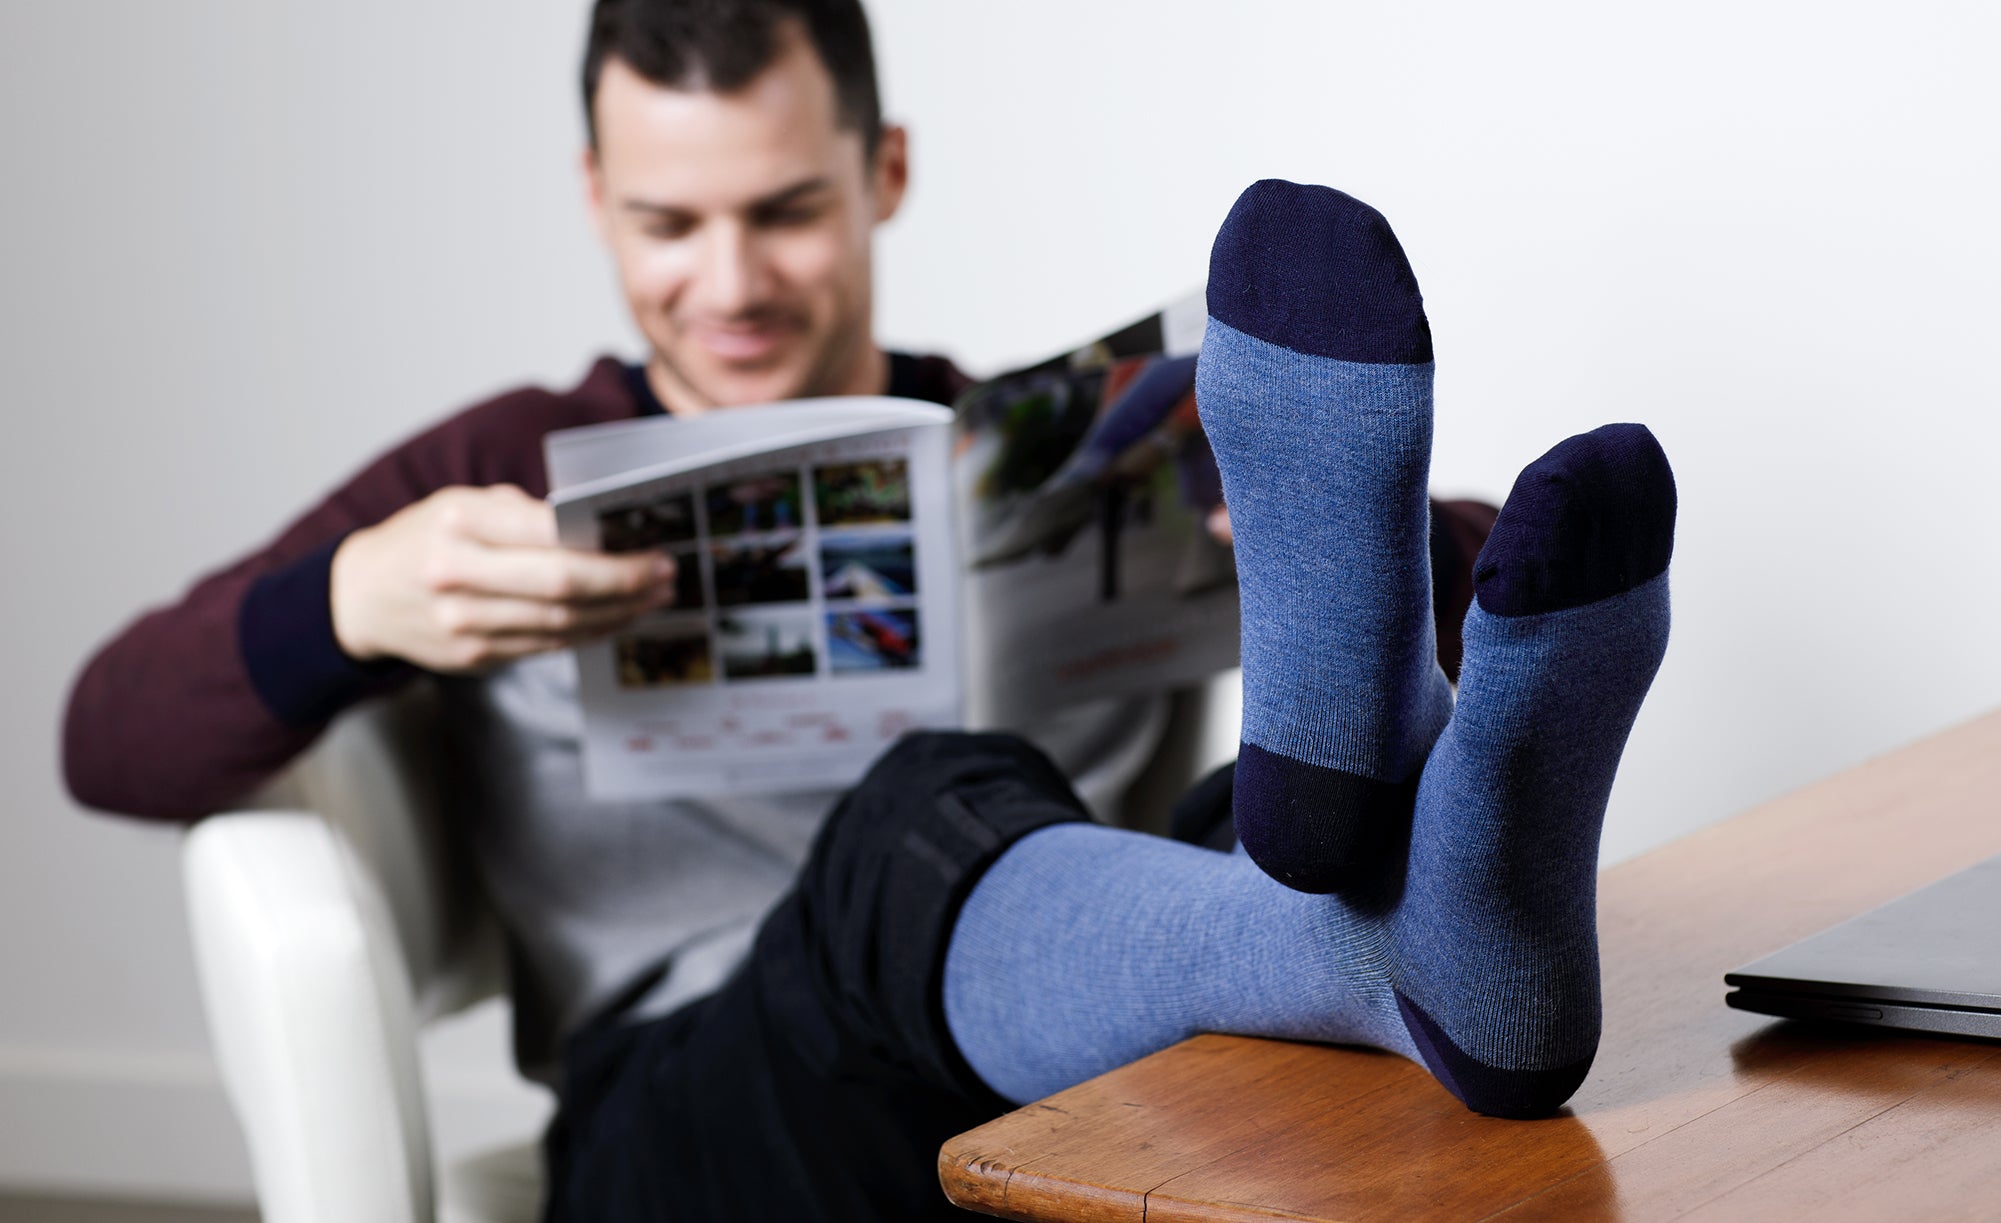 Men's Medical-Grade Compression Socks – VIM & VIGR